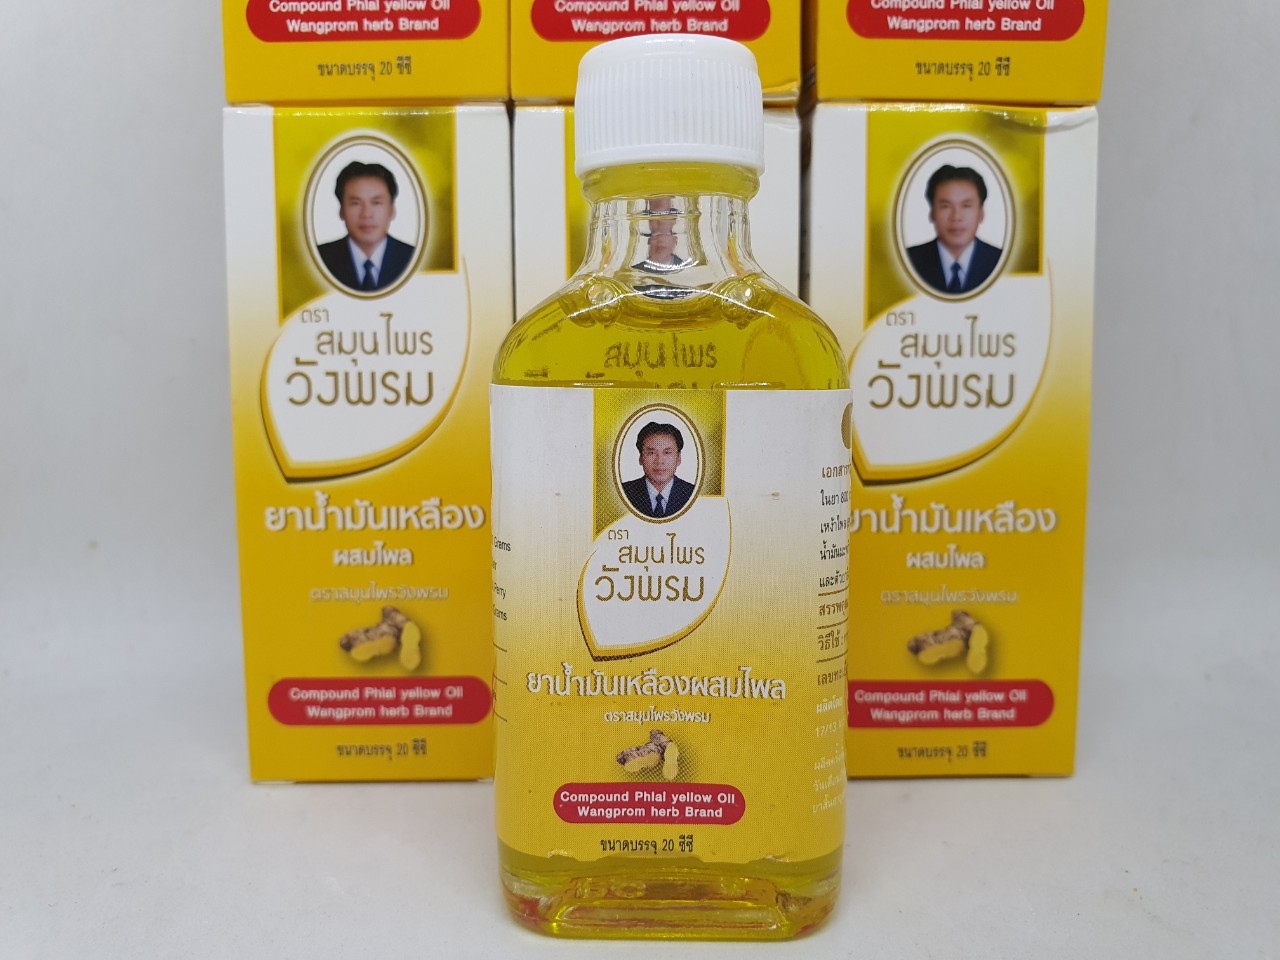 [HCM]Dầu gió compound phlal yellow oil wangprom herb brand chính hãng thái lan 20 ml